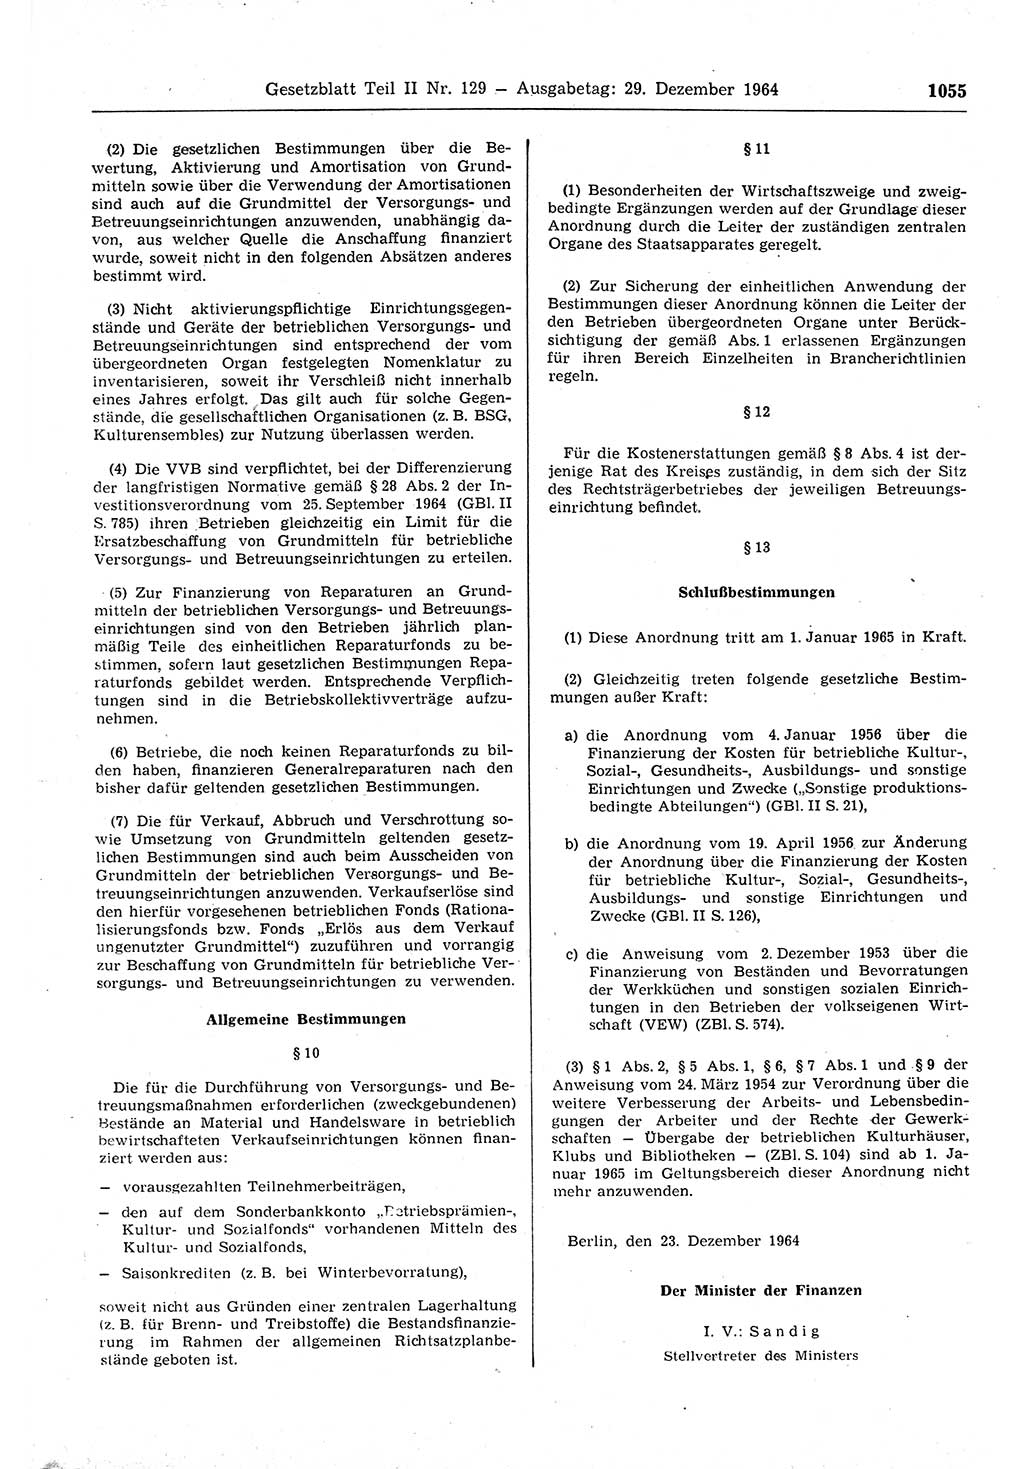 Gesetzblatt (GBl.) der Deutschen Demokratischen Republik (DDR) Teil ⅠⅠ 1964, Seite 1055 (GBl. DDR ⅠⅠ 1964, S. 1055)